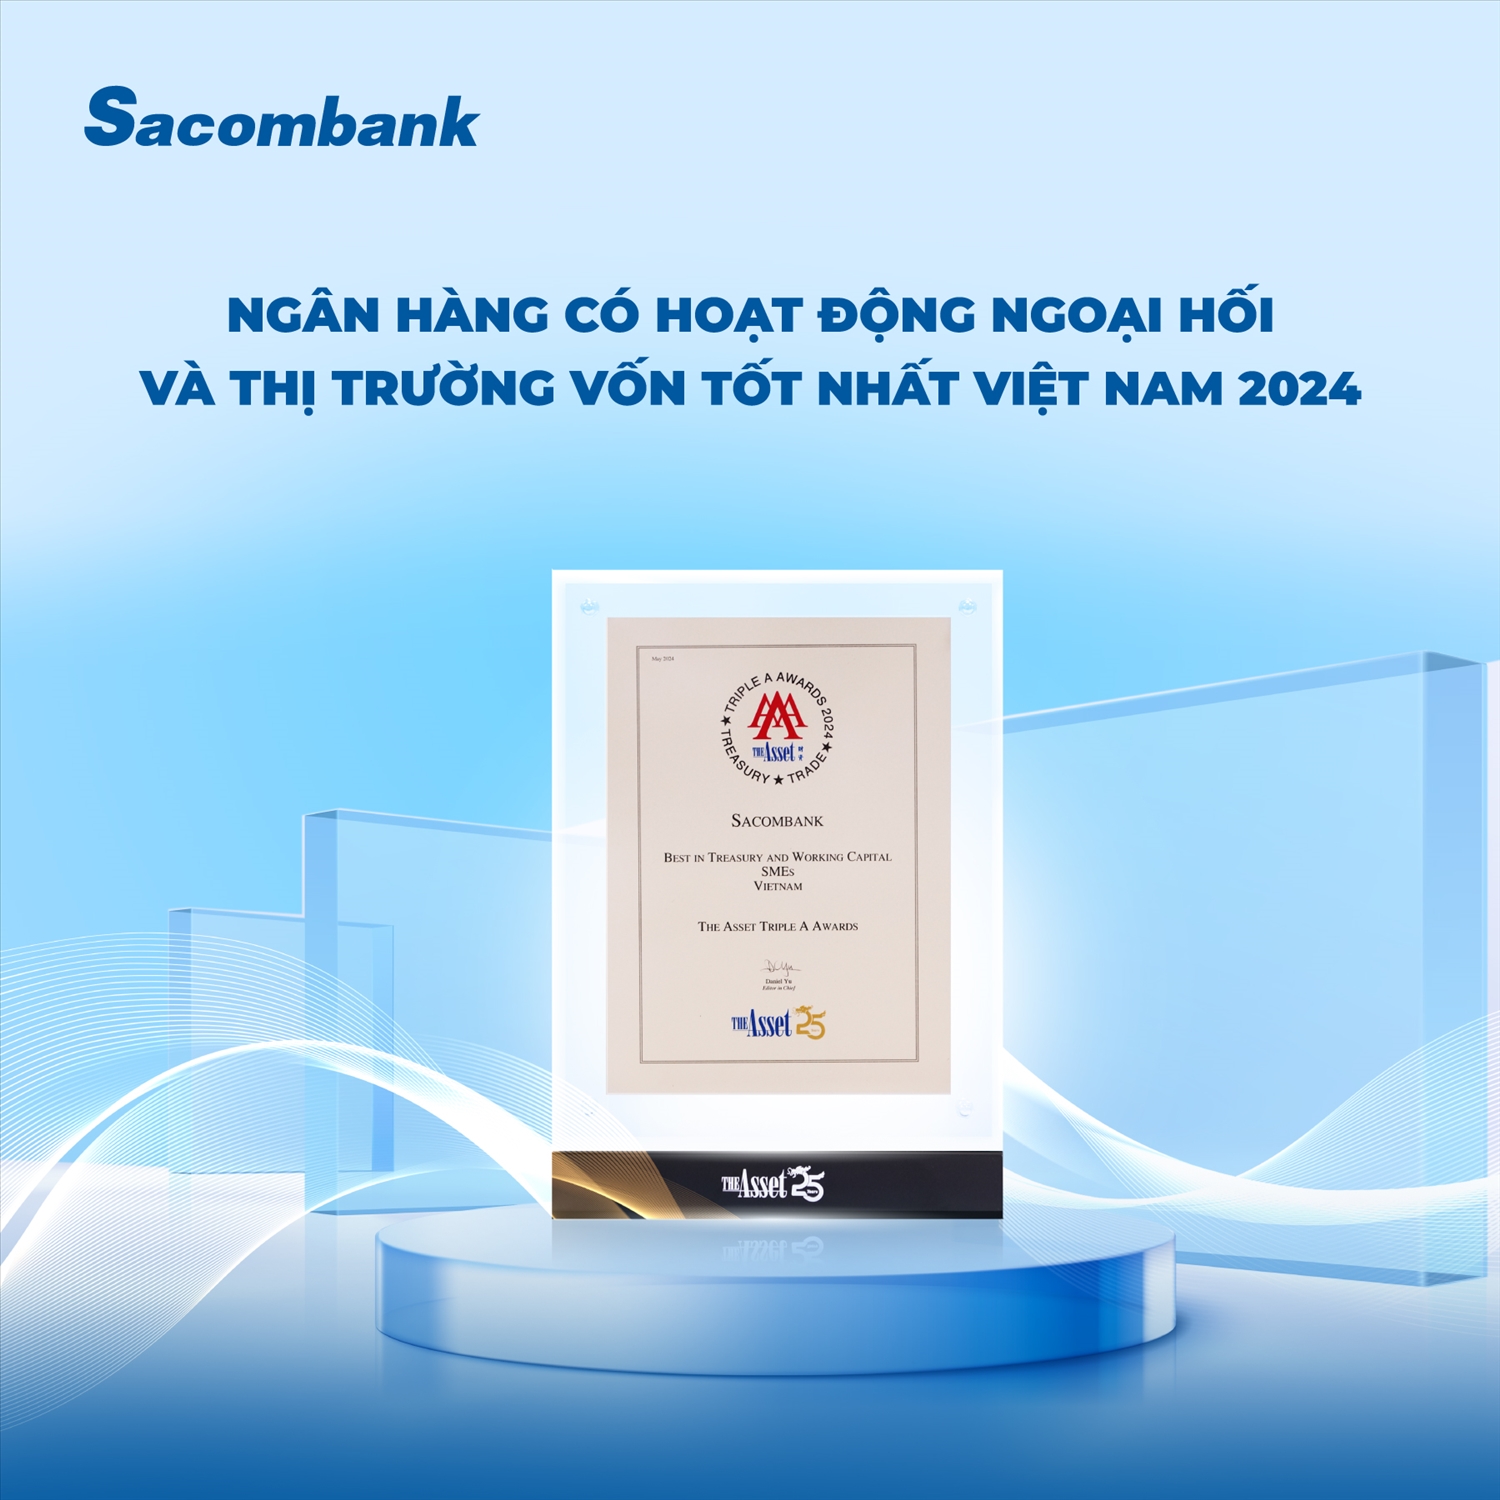 Dịch vụ ngoại hối của Sacombank đạt giải thưởng The Asset Triple A